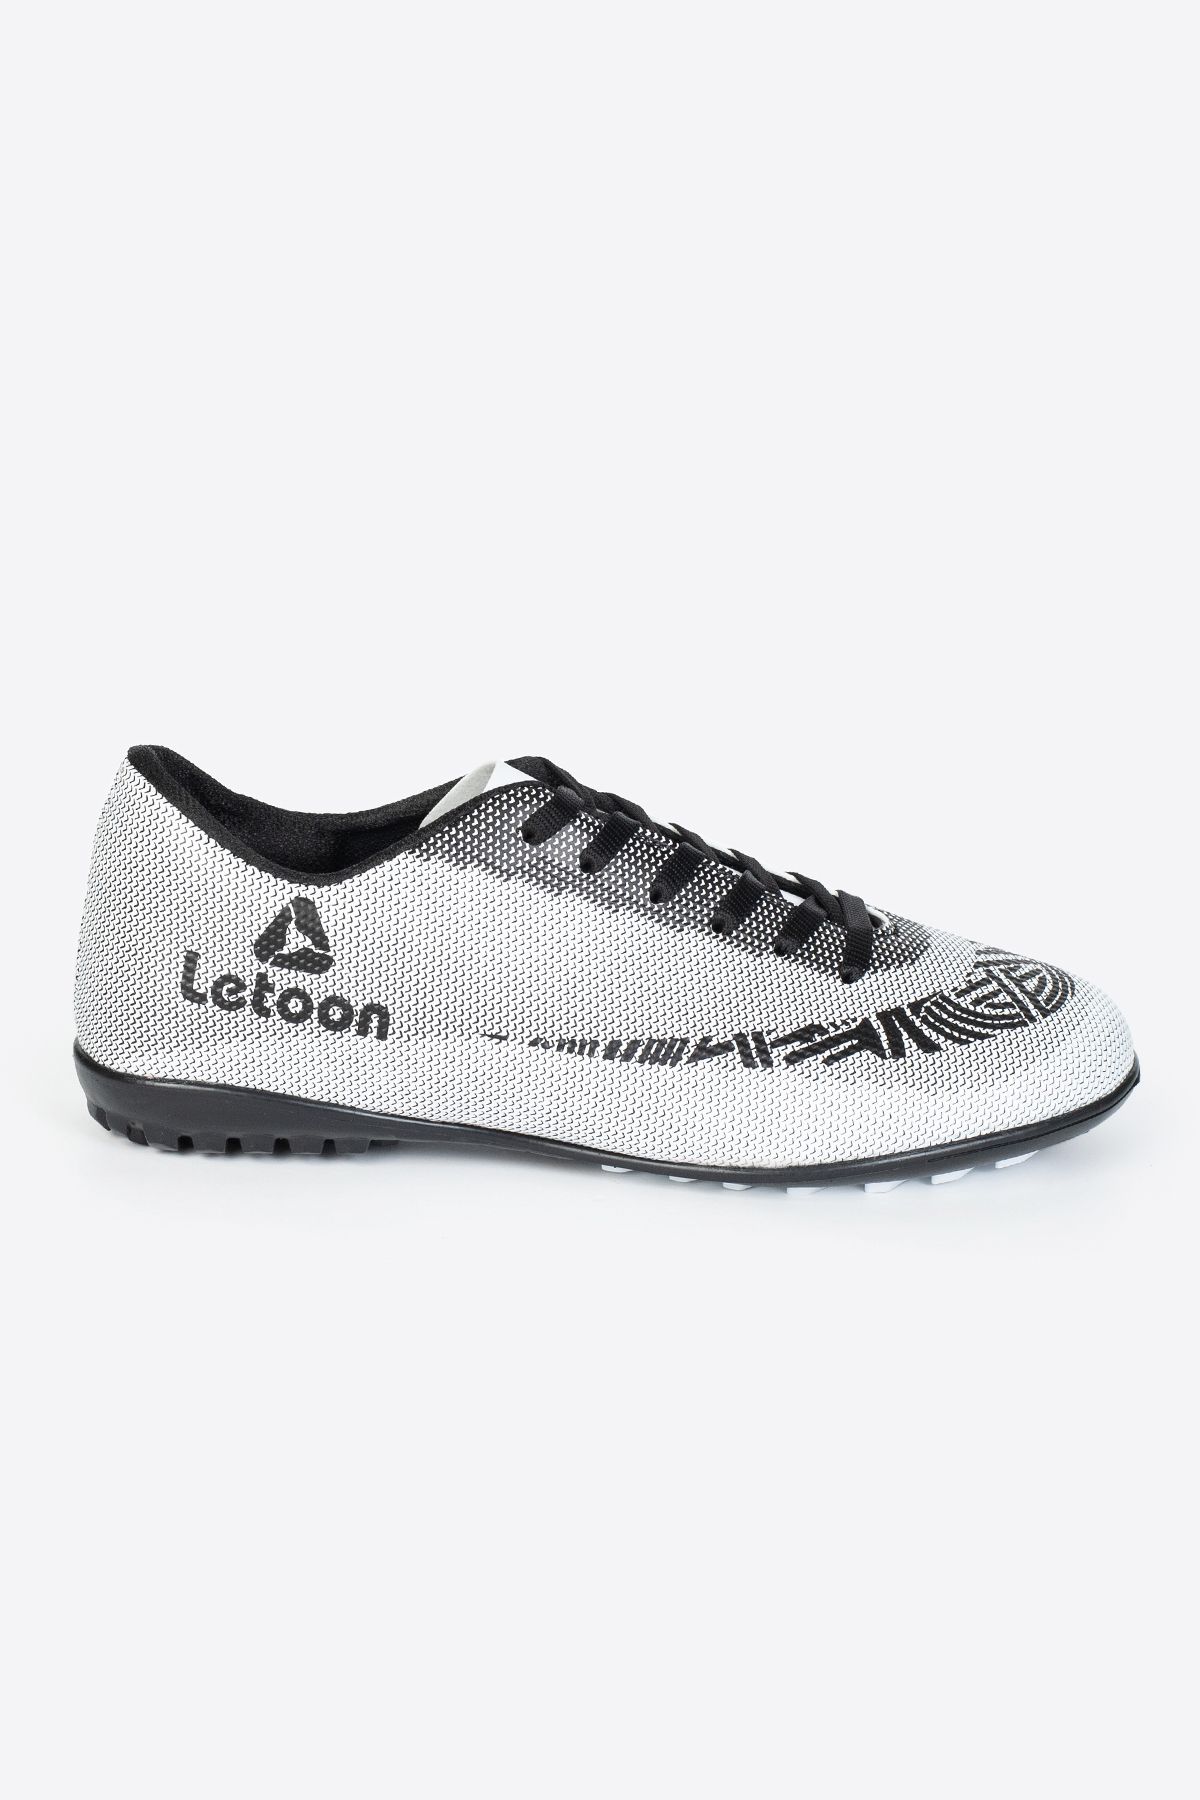 LETOON Hs003 Erkek Spor Ayakkabı Halısaha Futbol Ayakkabısı